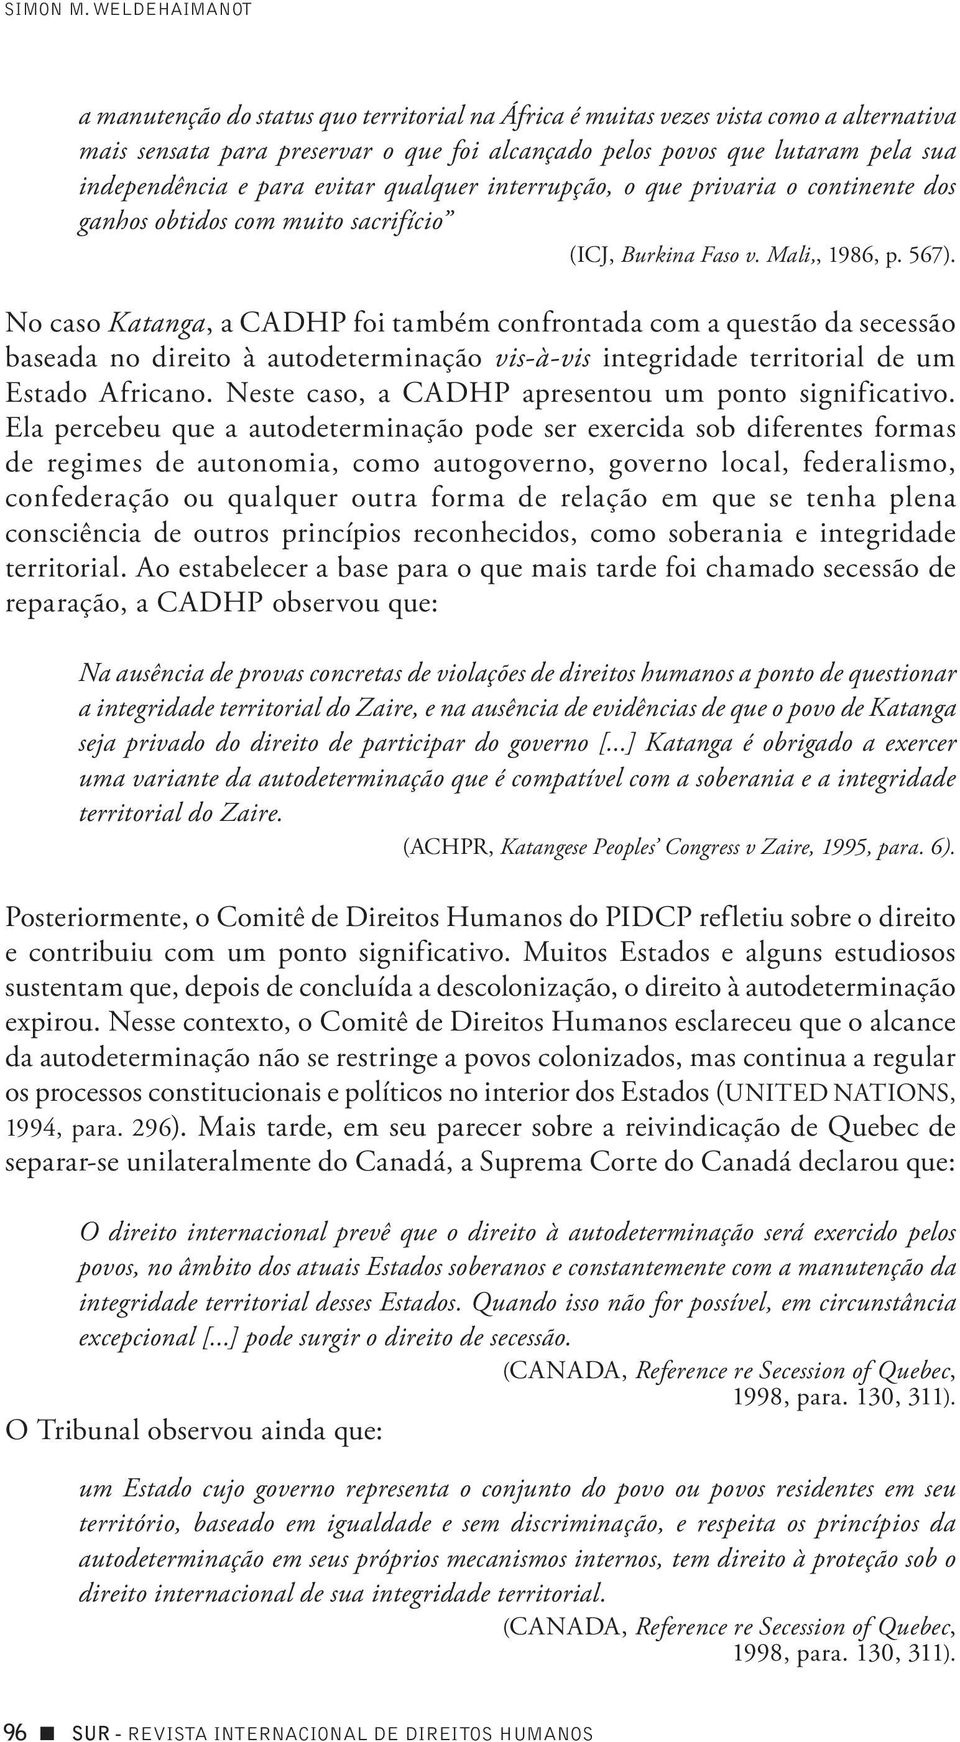 para evitar qualquer interrupção, o que privaria o continente dos ganhos obtidos com muito sacrifício (ICJ, Burkina Faso v. Mali,, 1986, p. 567).